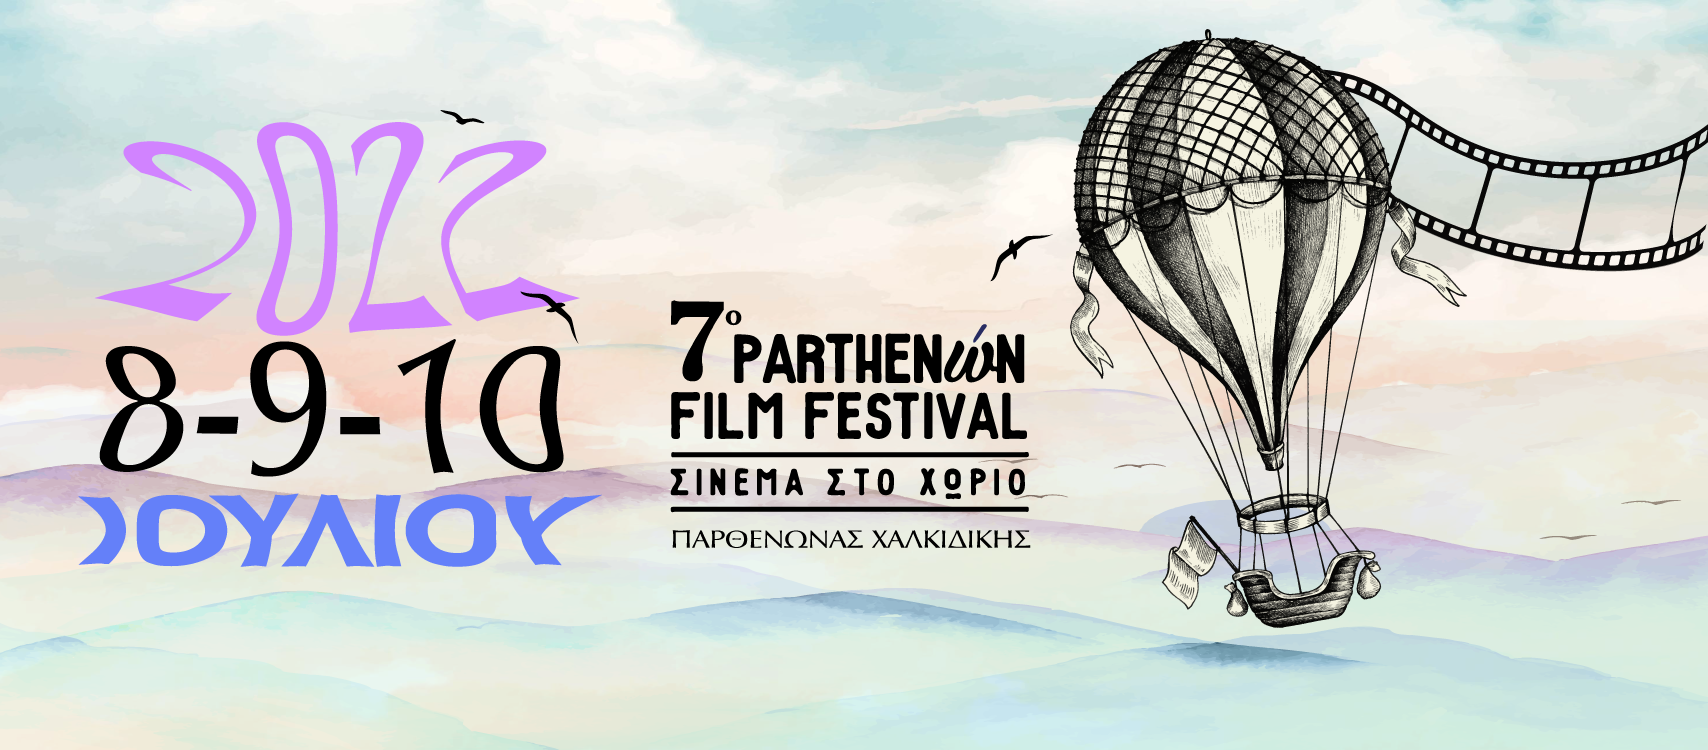 Το 7o Parthenώn Film Festival επιστρέφει στον Παρθενώνα Χαλκιδικής